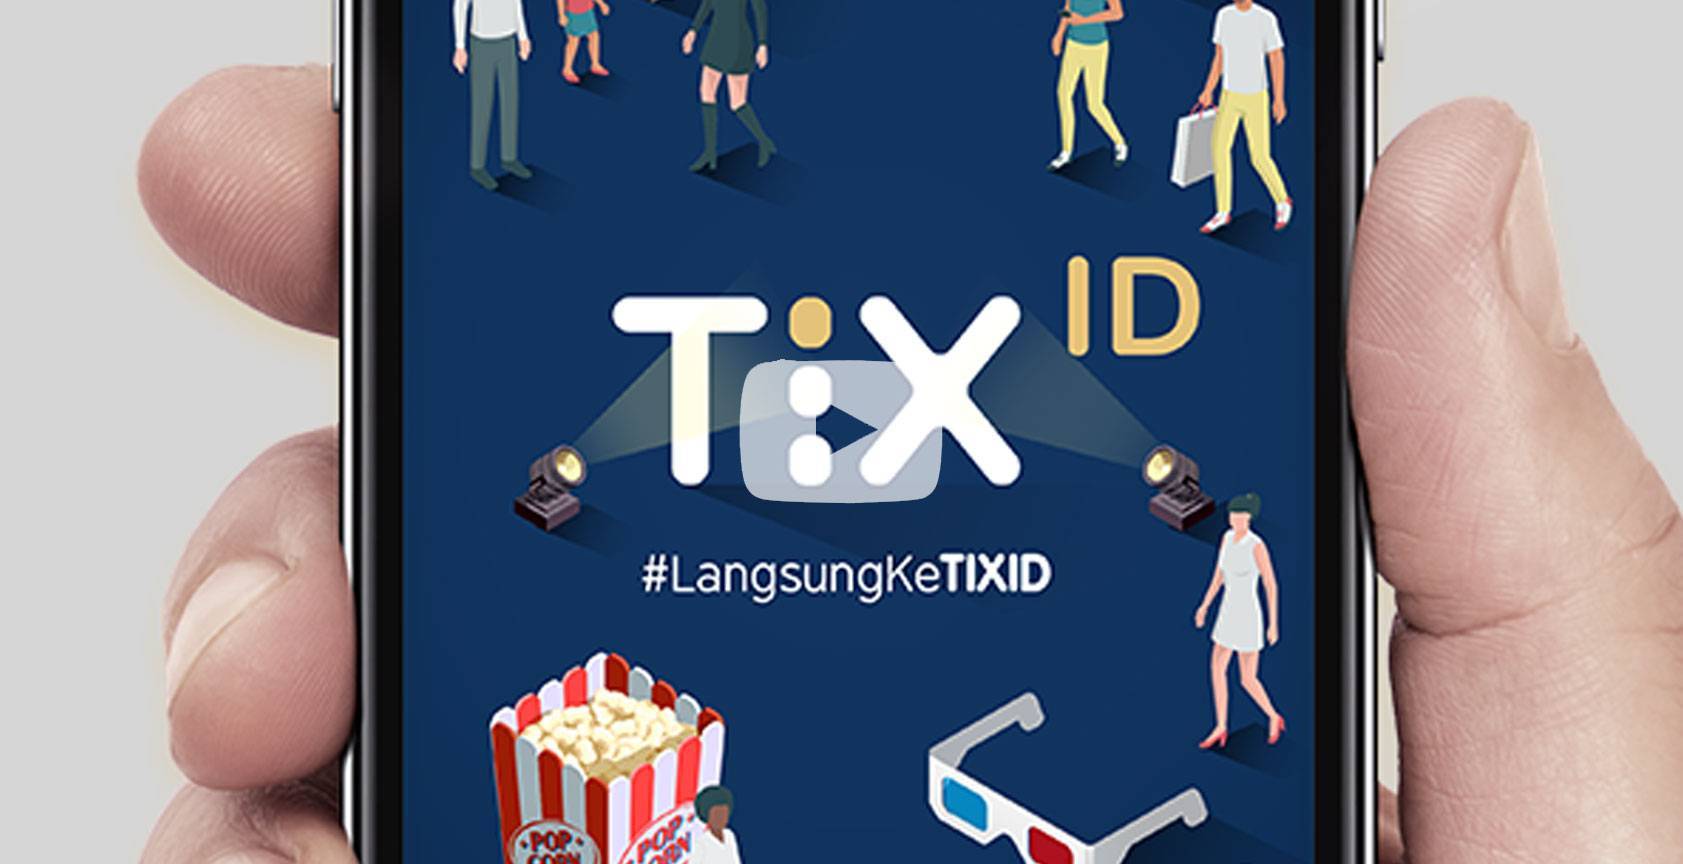 Tix008 - TixID Social Media